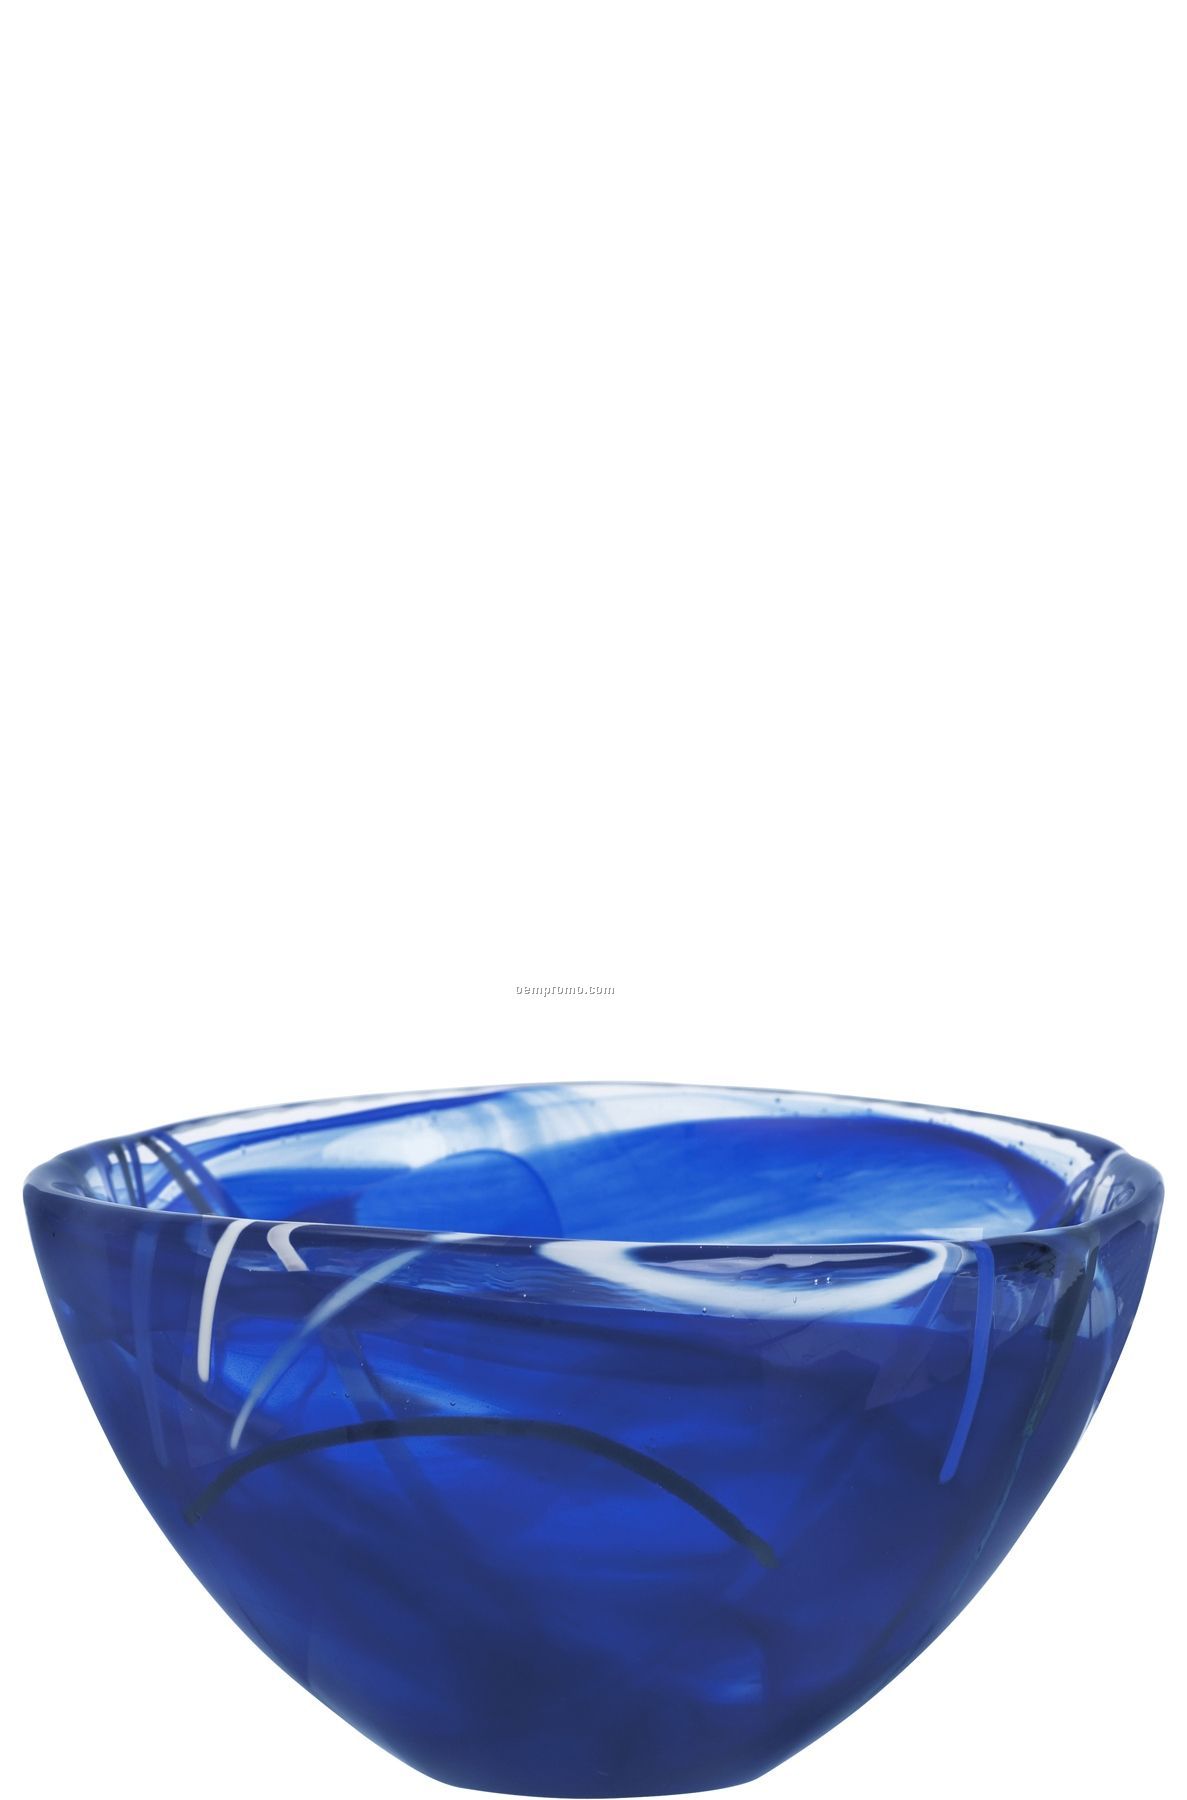 Contrast Small Swirl Crystal Bowl By Anna Ehrner (Blue)